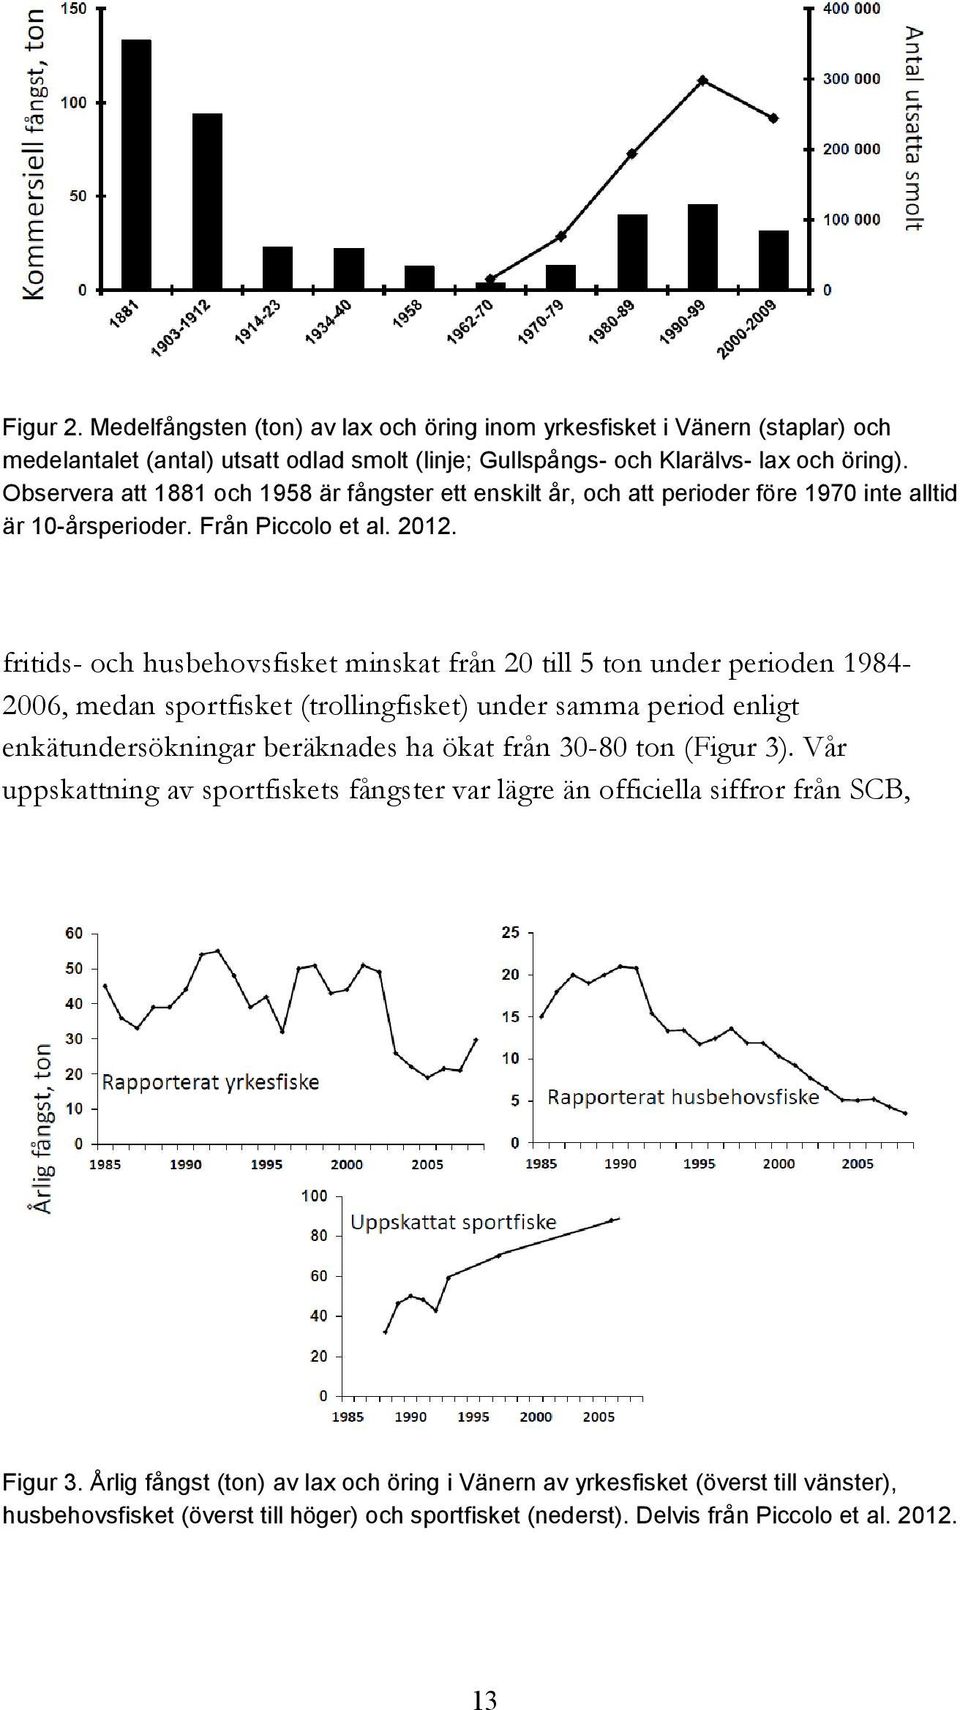 fritids- och husbehovsfisket minskat från 20 till 5 ton under perioden 1984-2006, medan sportfisket (trollingfisket) under samma period enligt enkätundersökningar beräknades ha ökat från 30-80 ton